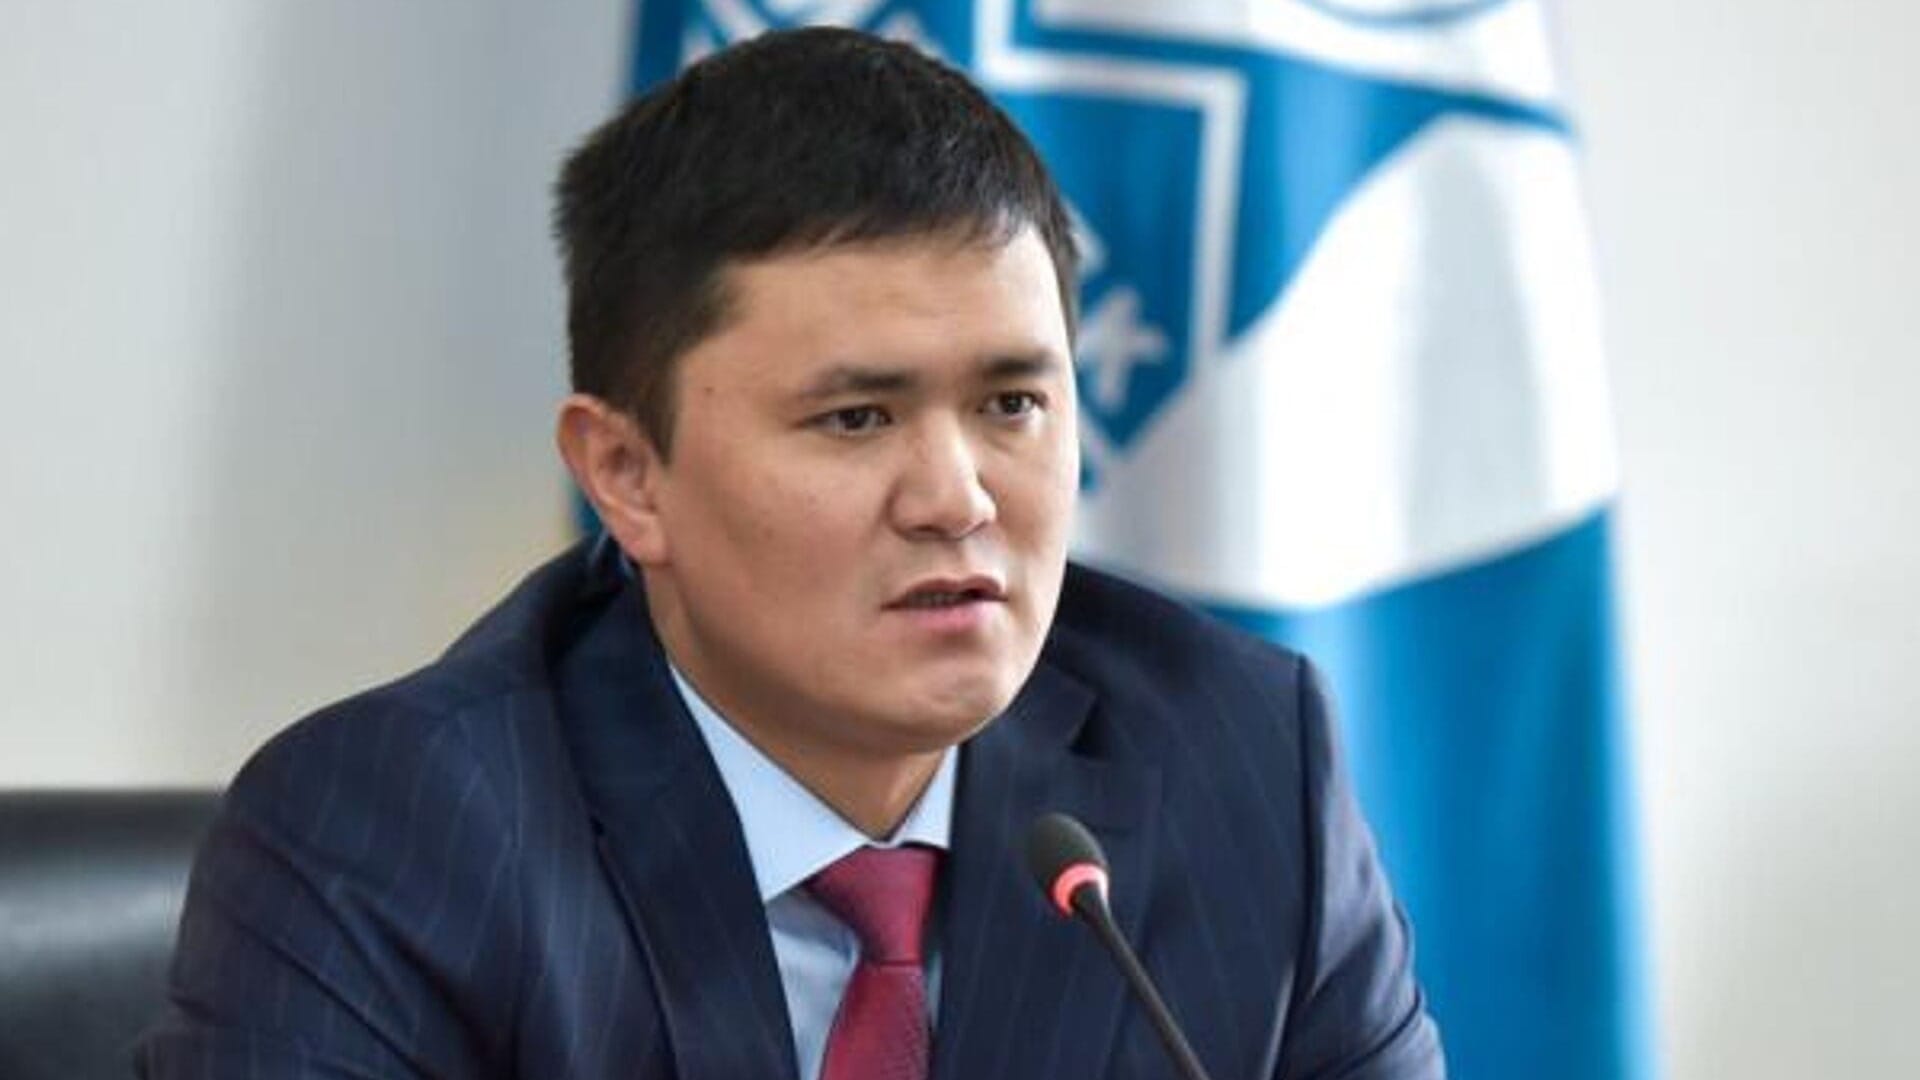 Нурдан Орунтаев отказался отвечать на вопрос о возмещении ущерба кафе "Батуми"